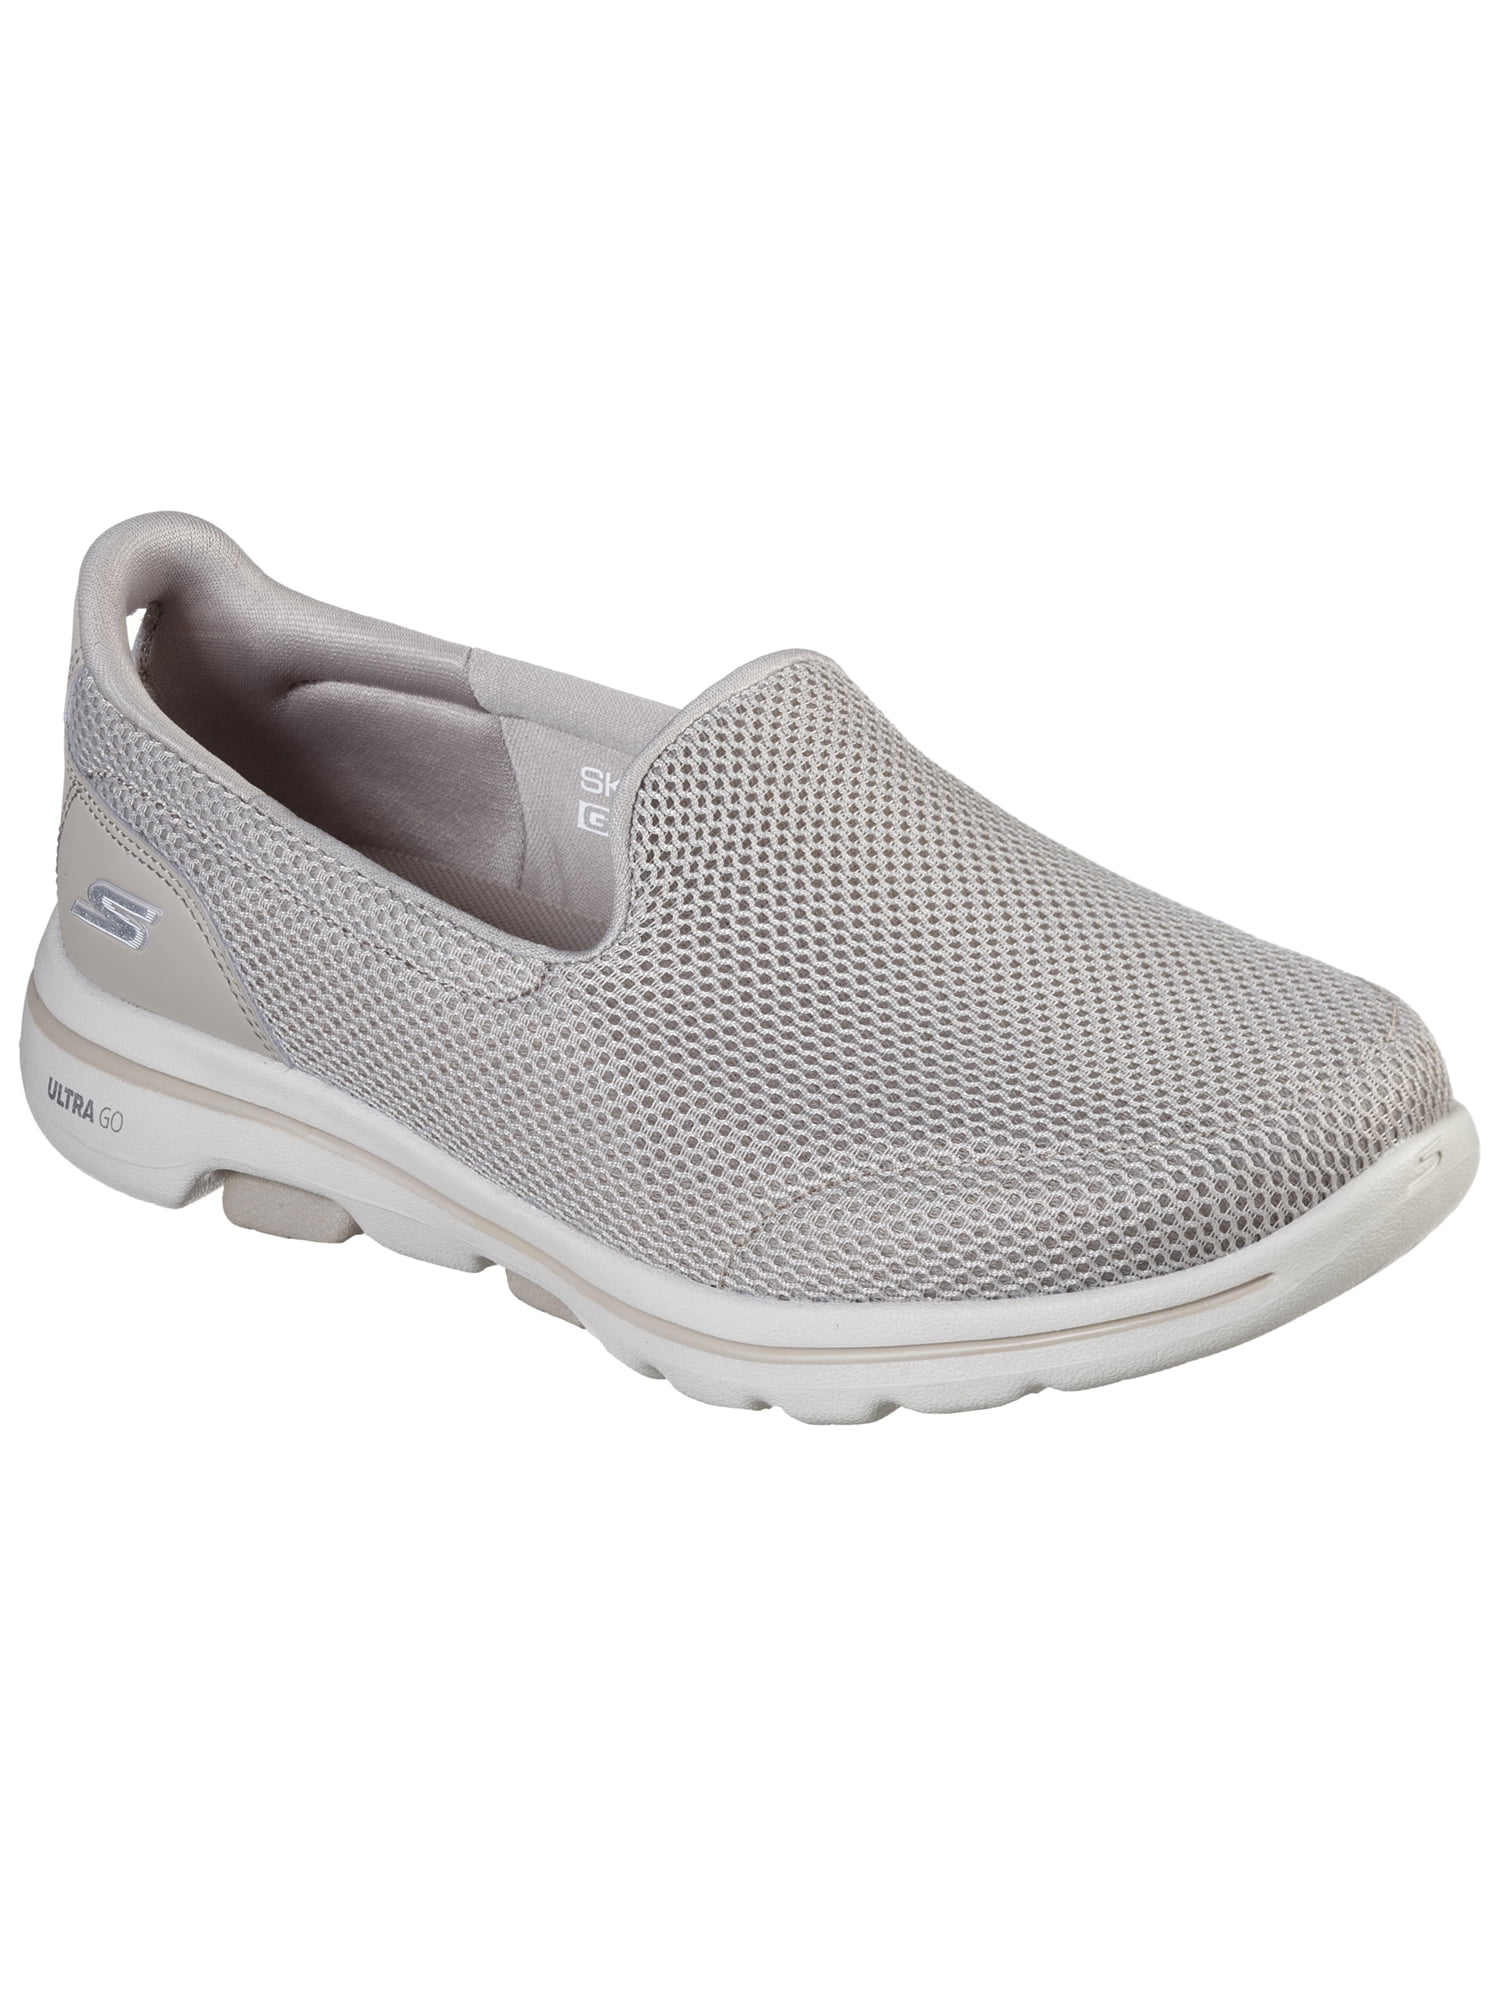 Microordenador chocar evidencia Skechers Women's GOwalk 5 Slip-on Comfort Shoe (Wide Width Available) -  Walmart.com